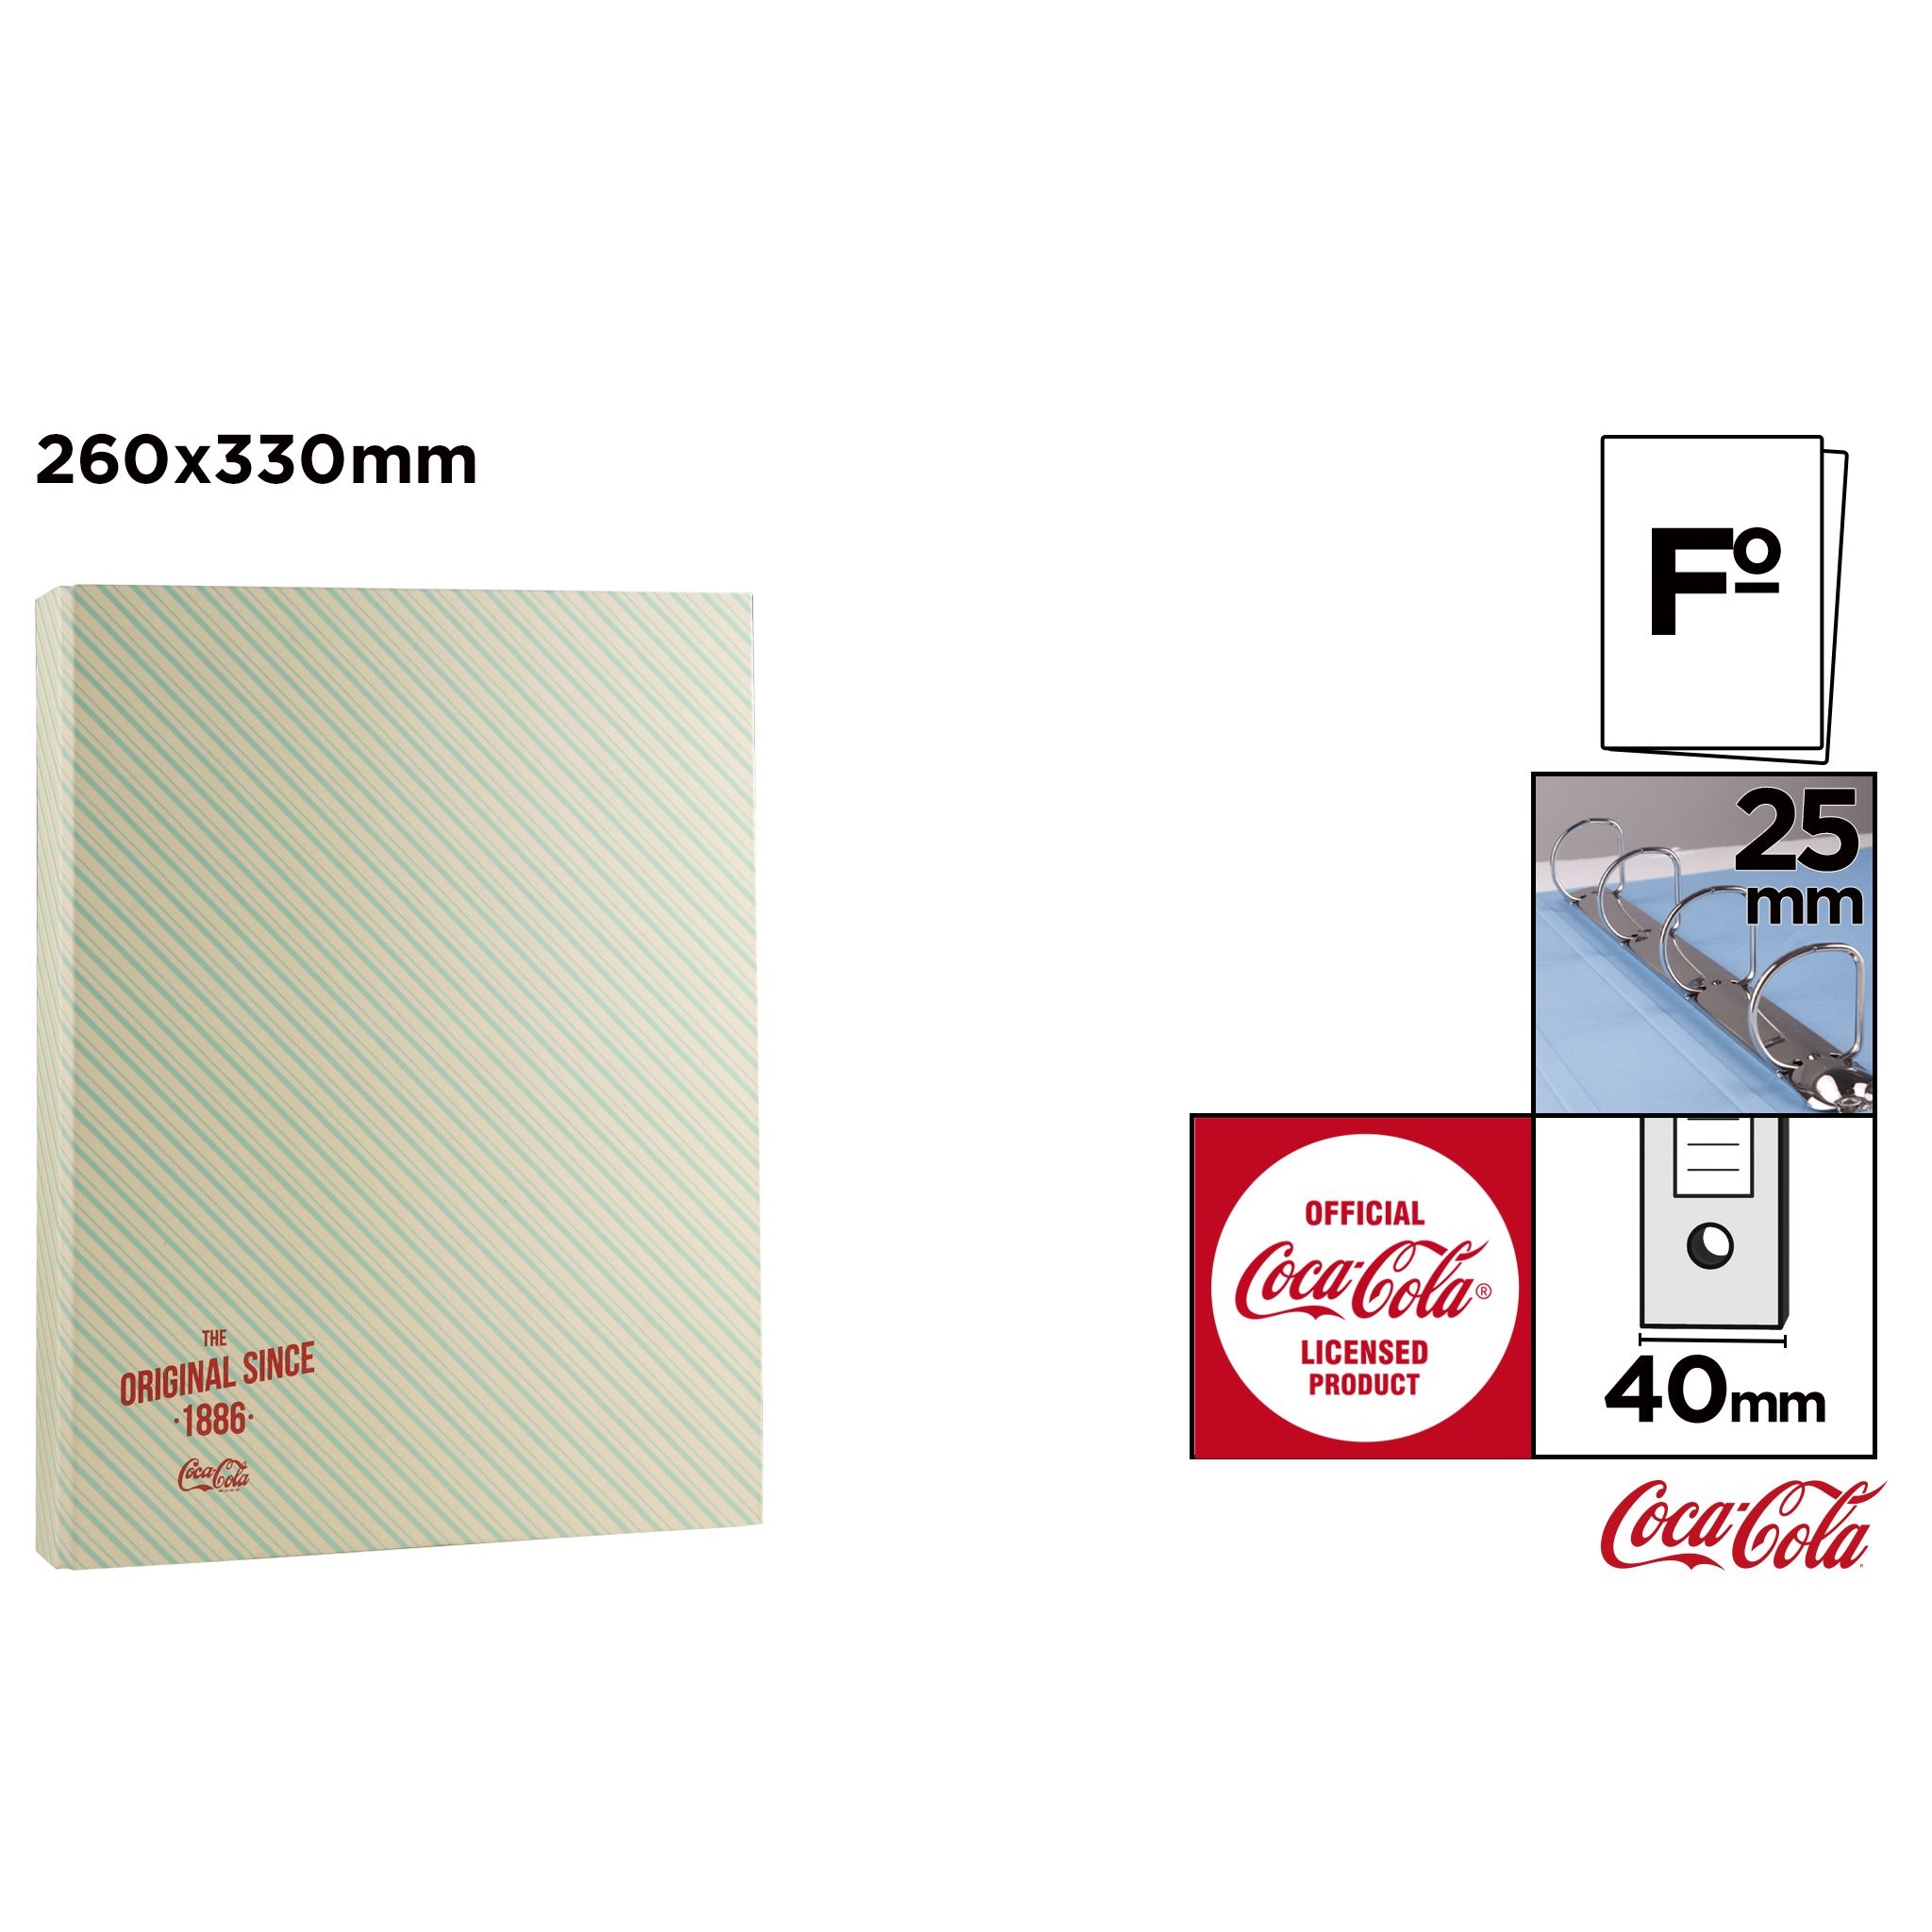 CC010 Coca-Cola aplanko failų dėžutės duomenų tvarkyklė